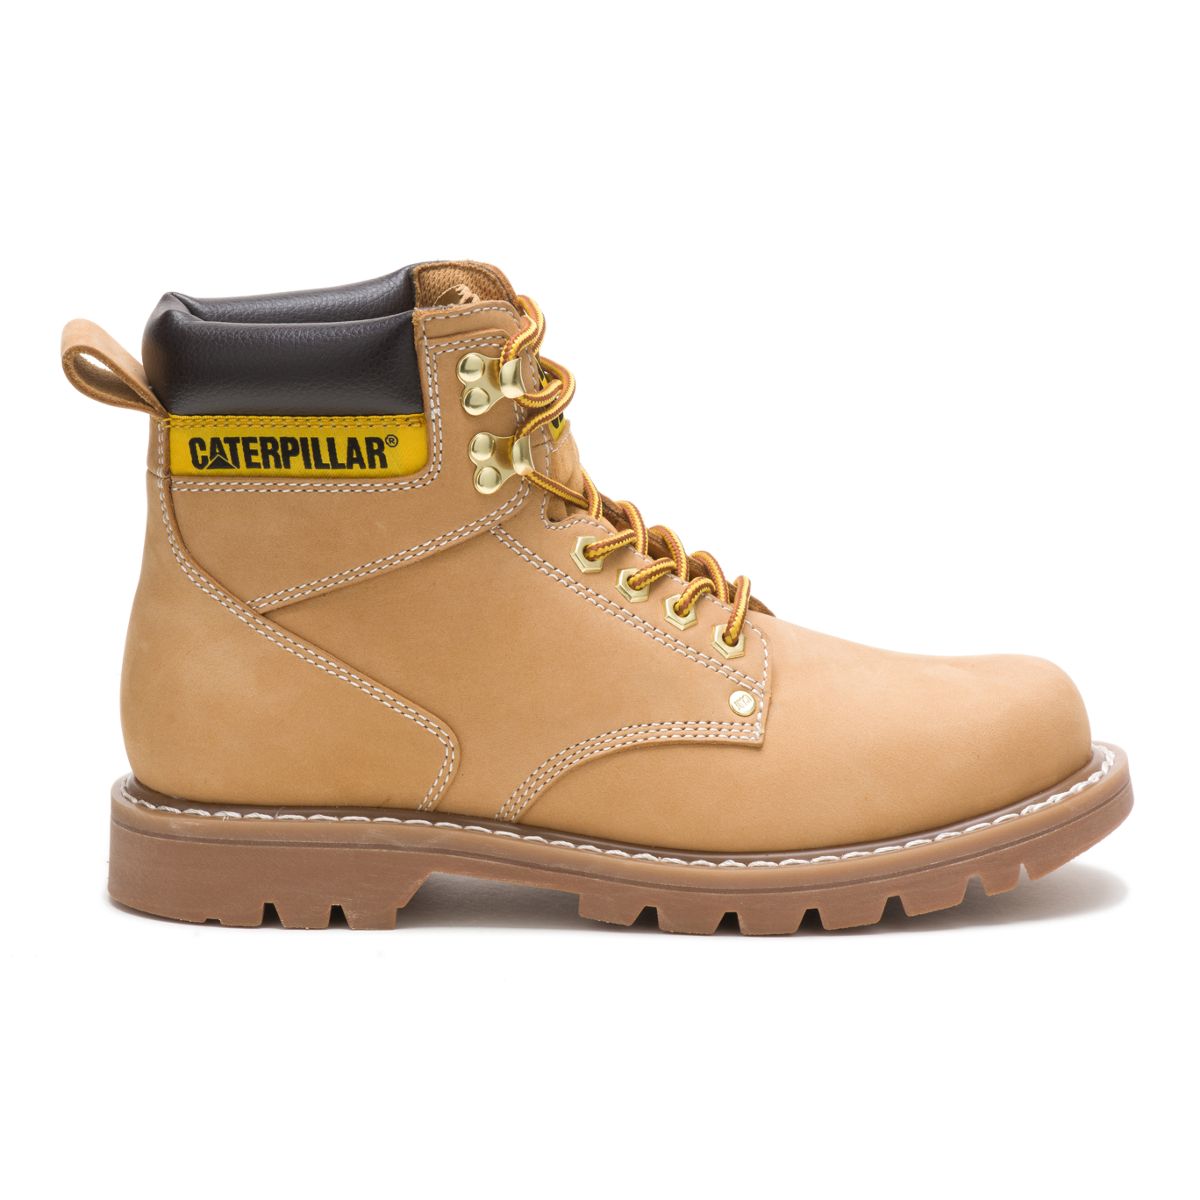 caterpillar boots online